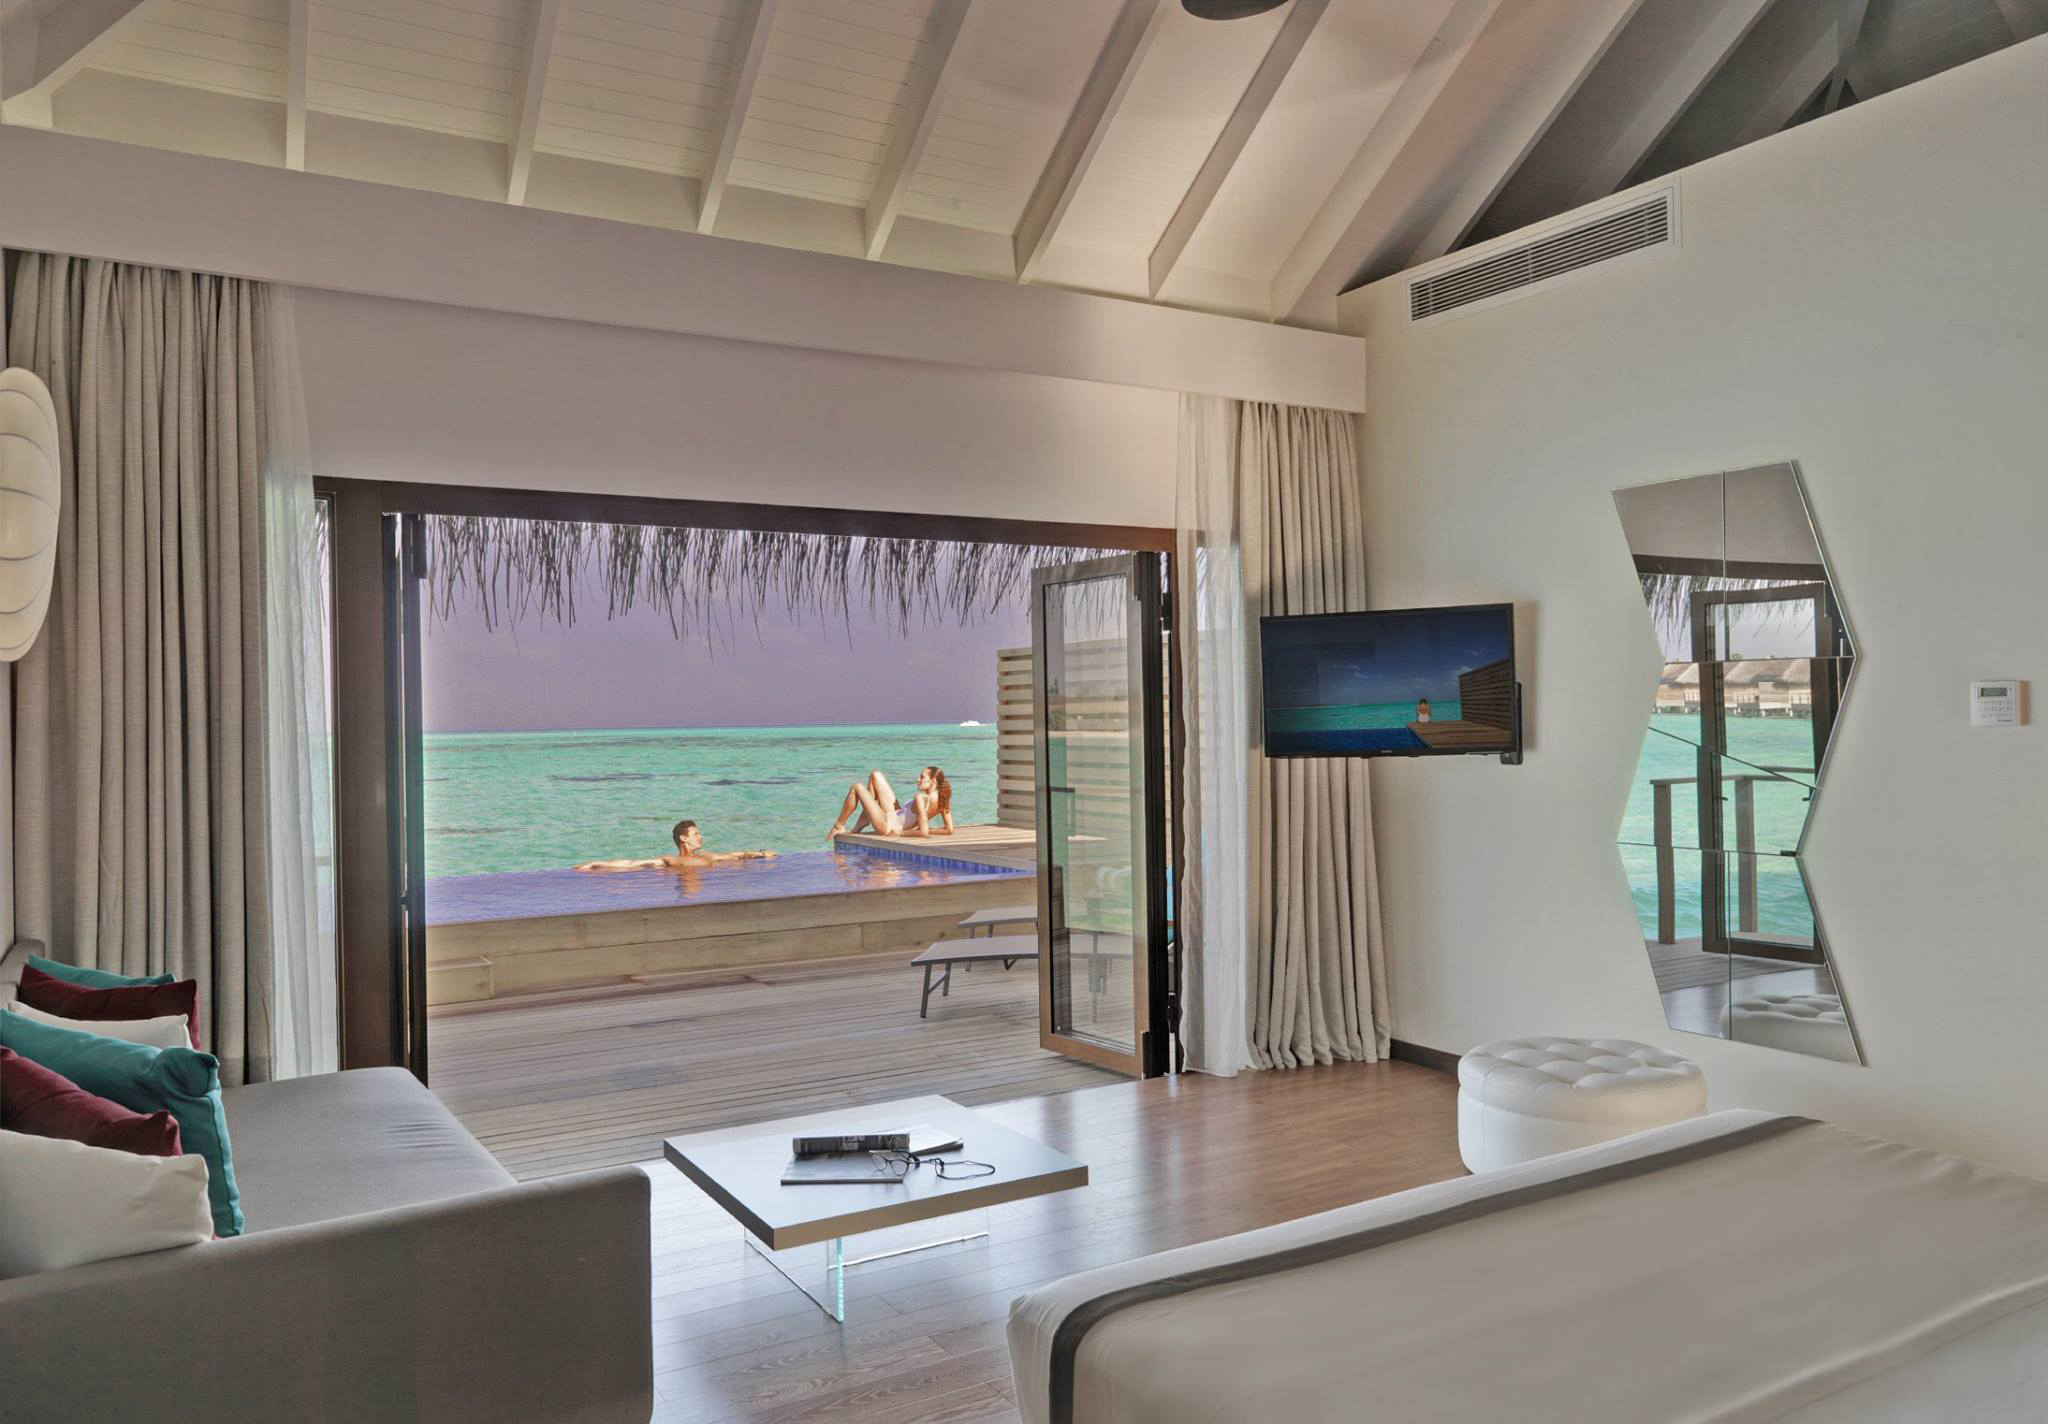 Cocoon Maldives Resort - Ookolhufinolhu, Lhaviyani Atoll, Maldives - Lagoon Overwater Suite with Pool Interior